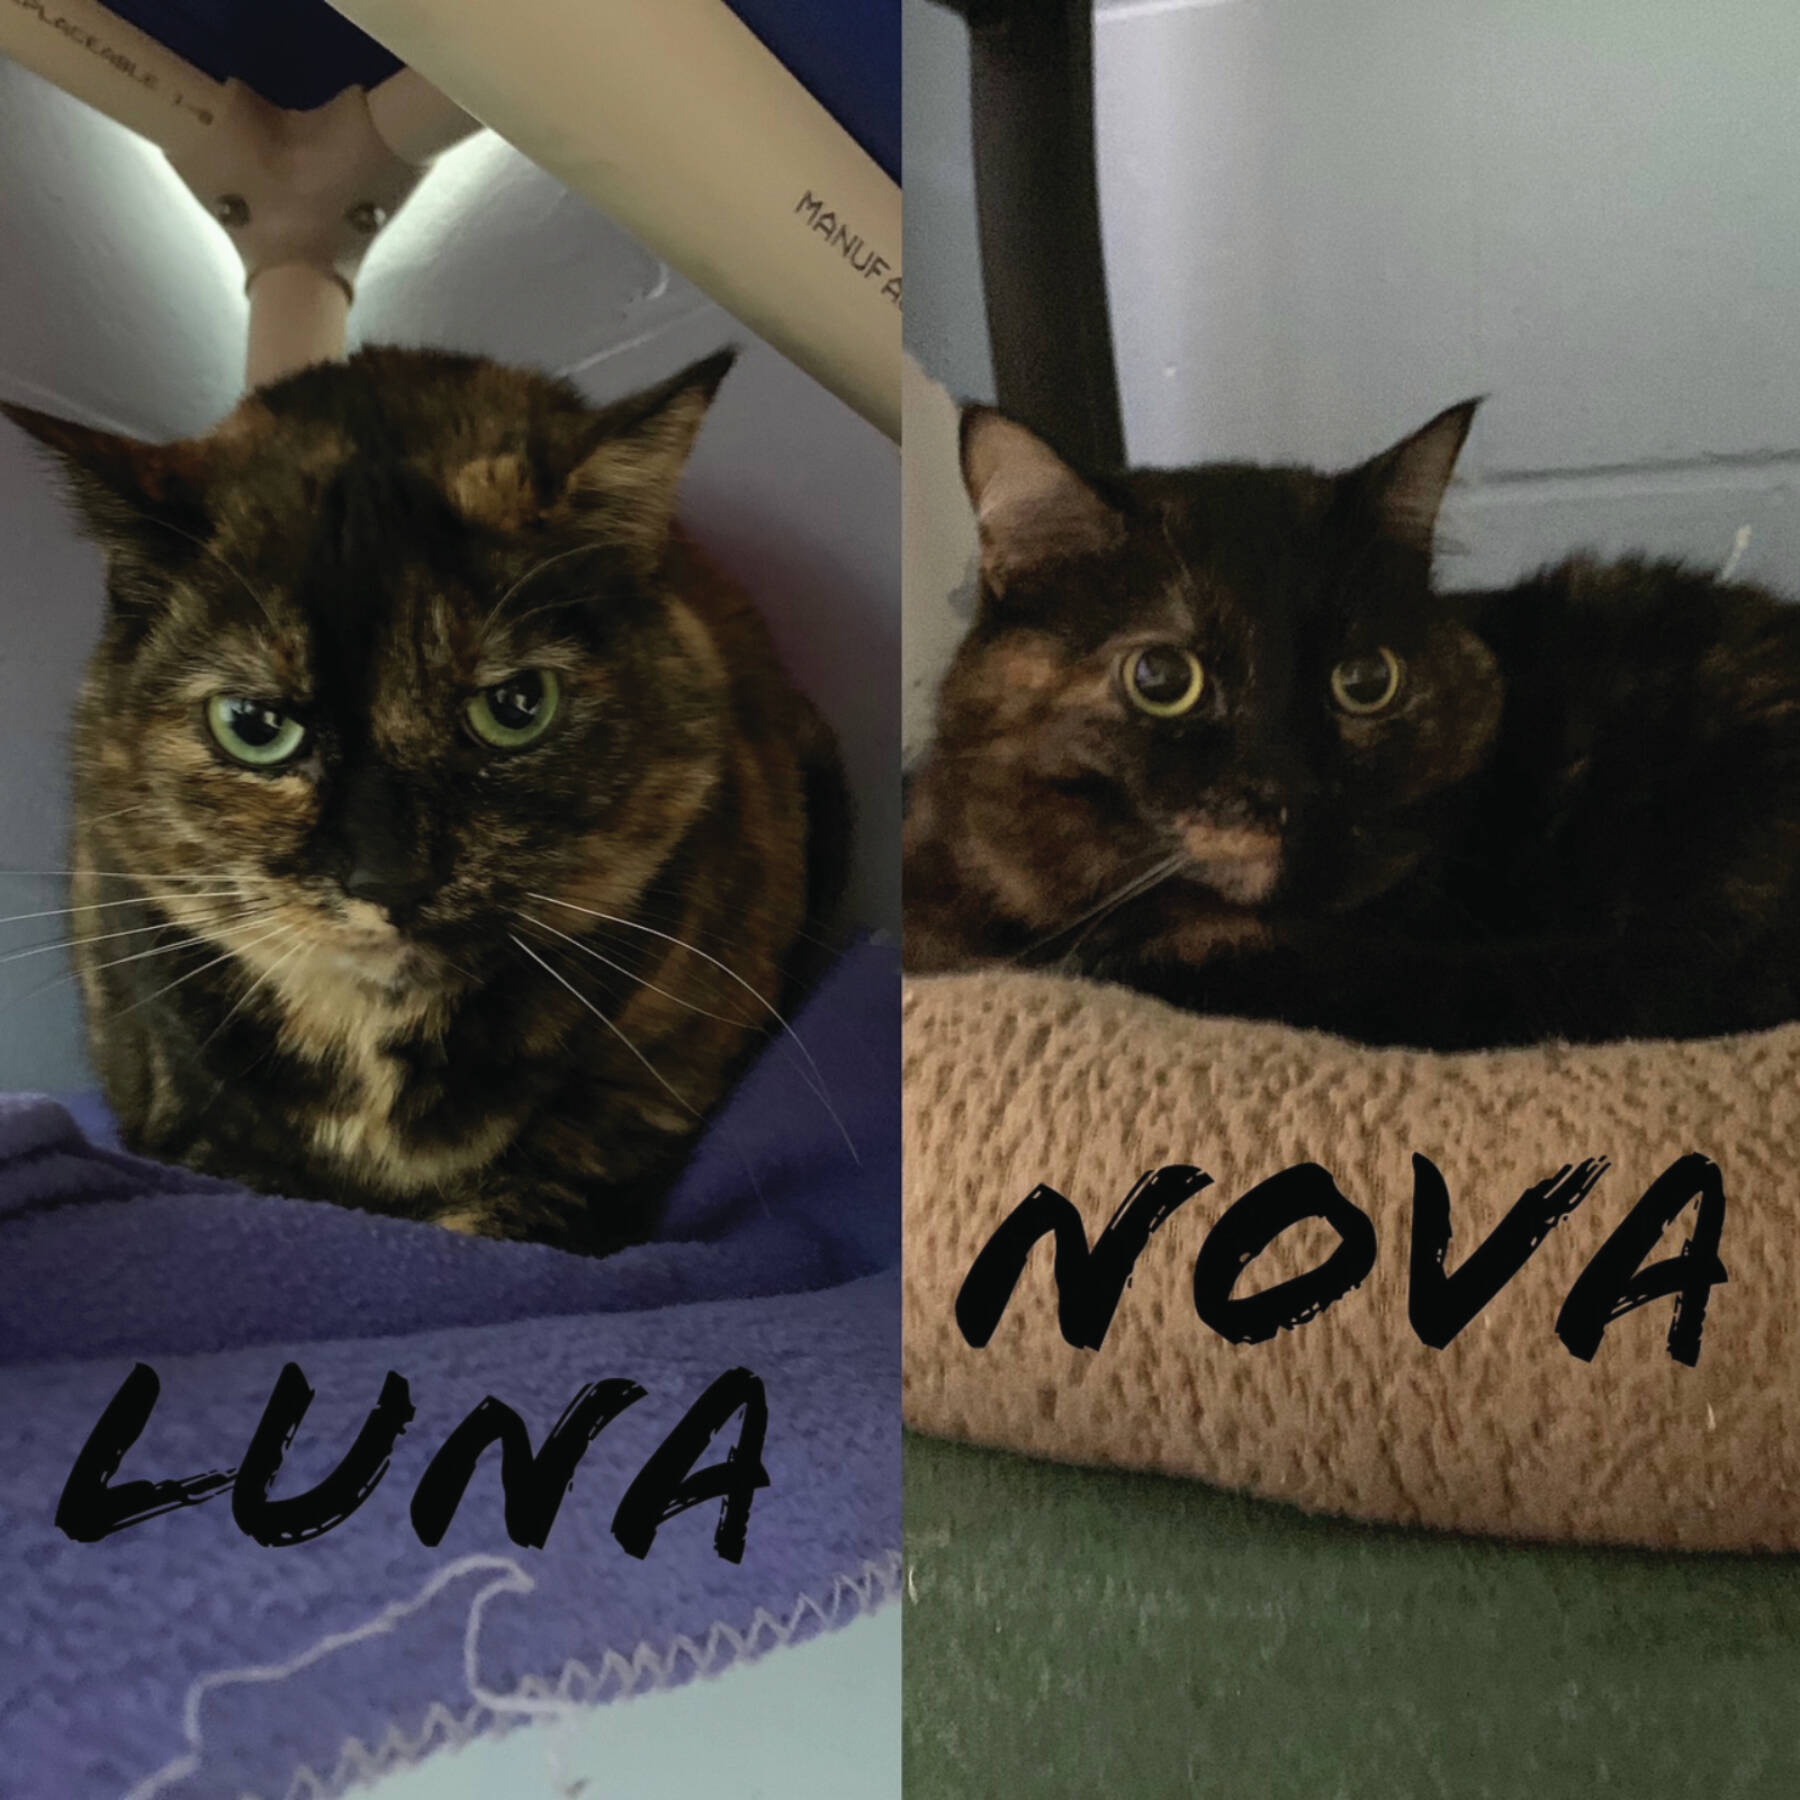 Luna and Nova